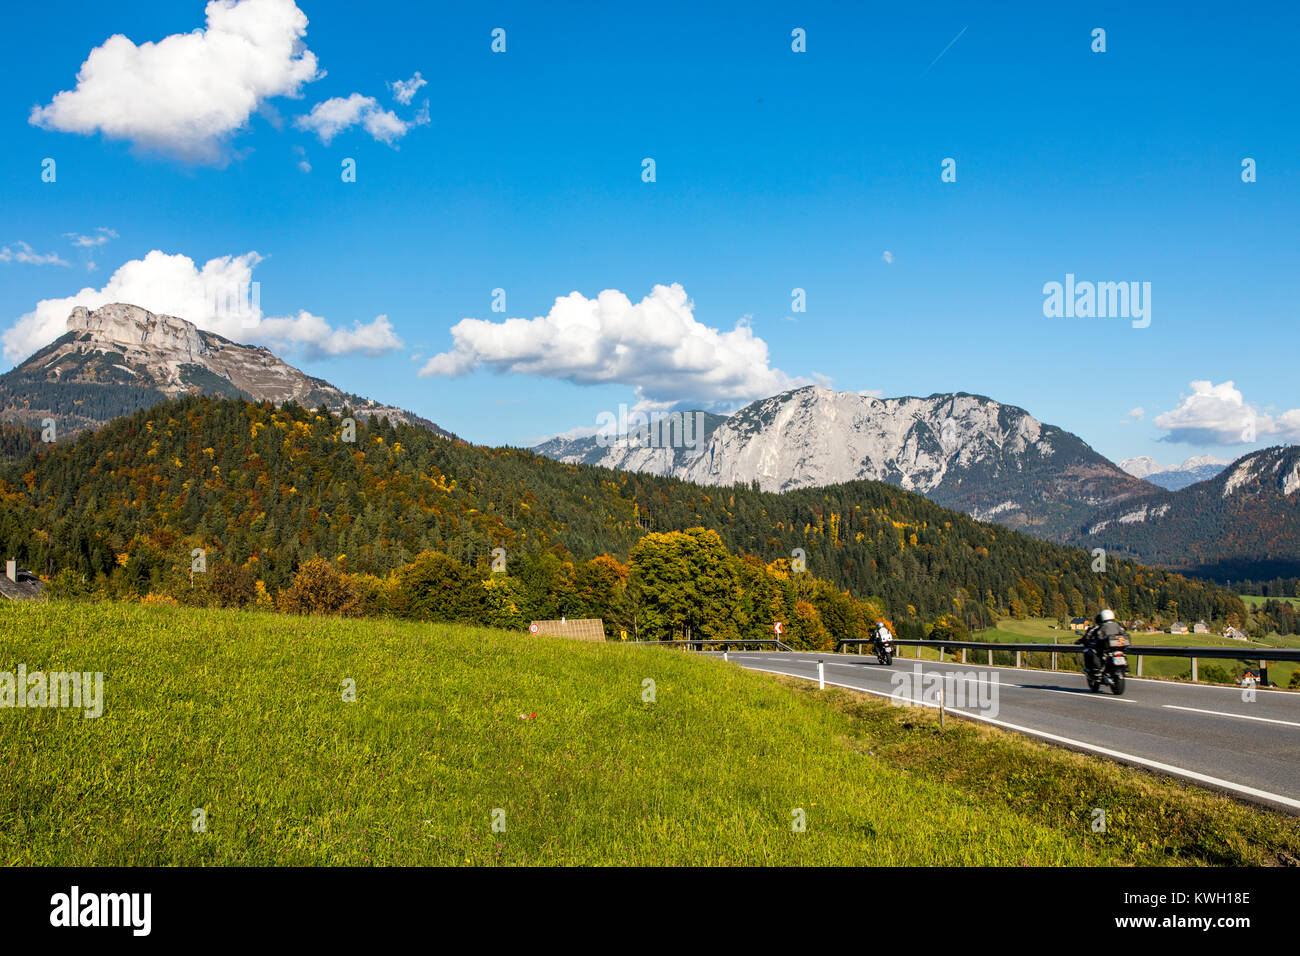 La Terra Altausseer distretto, nella regione del Salzkammergut, parte dei morti montagne, Stiria, Austria, perdente vertice di montagna, Foto Stock